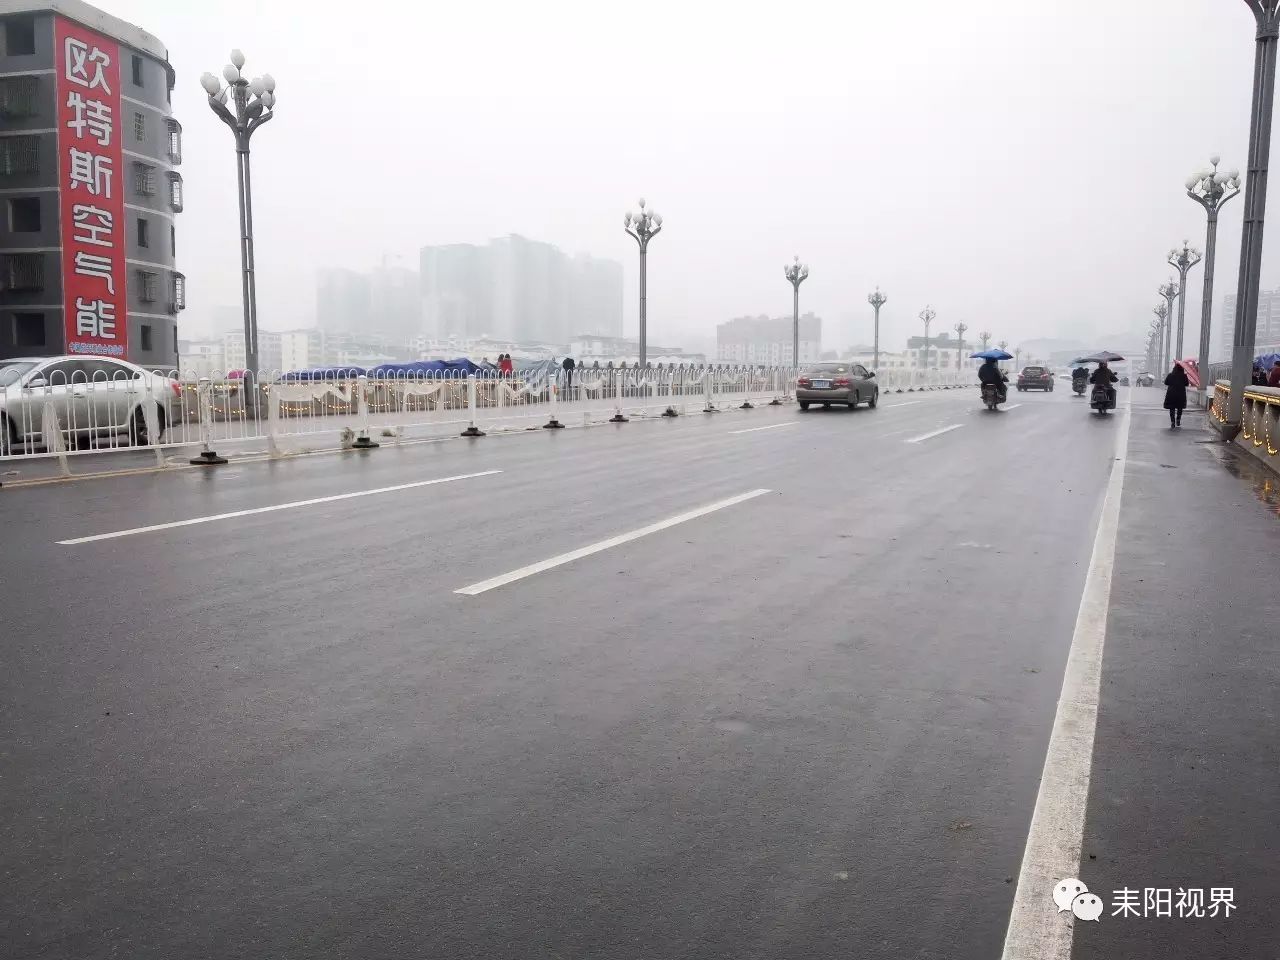 耒阳大桥安装崭新护栏 有望缓解大桥拥堵现象